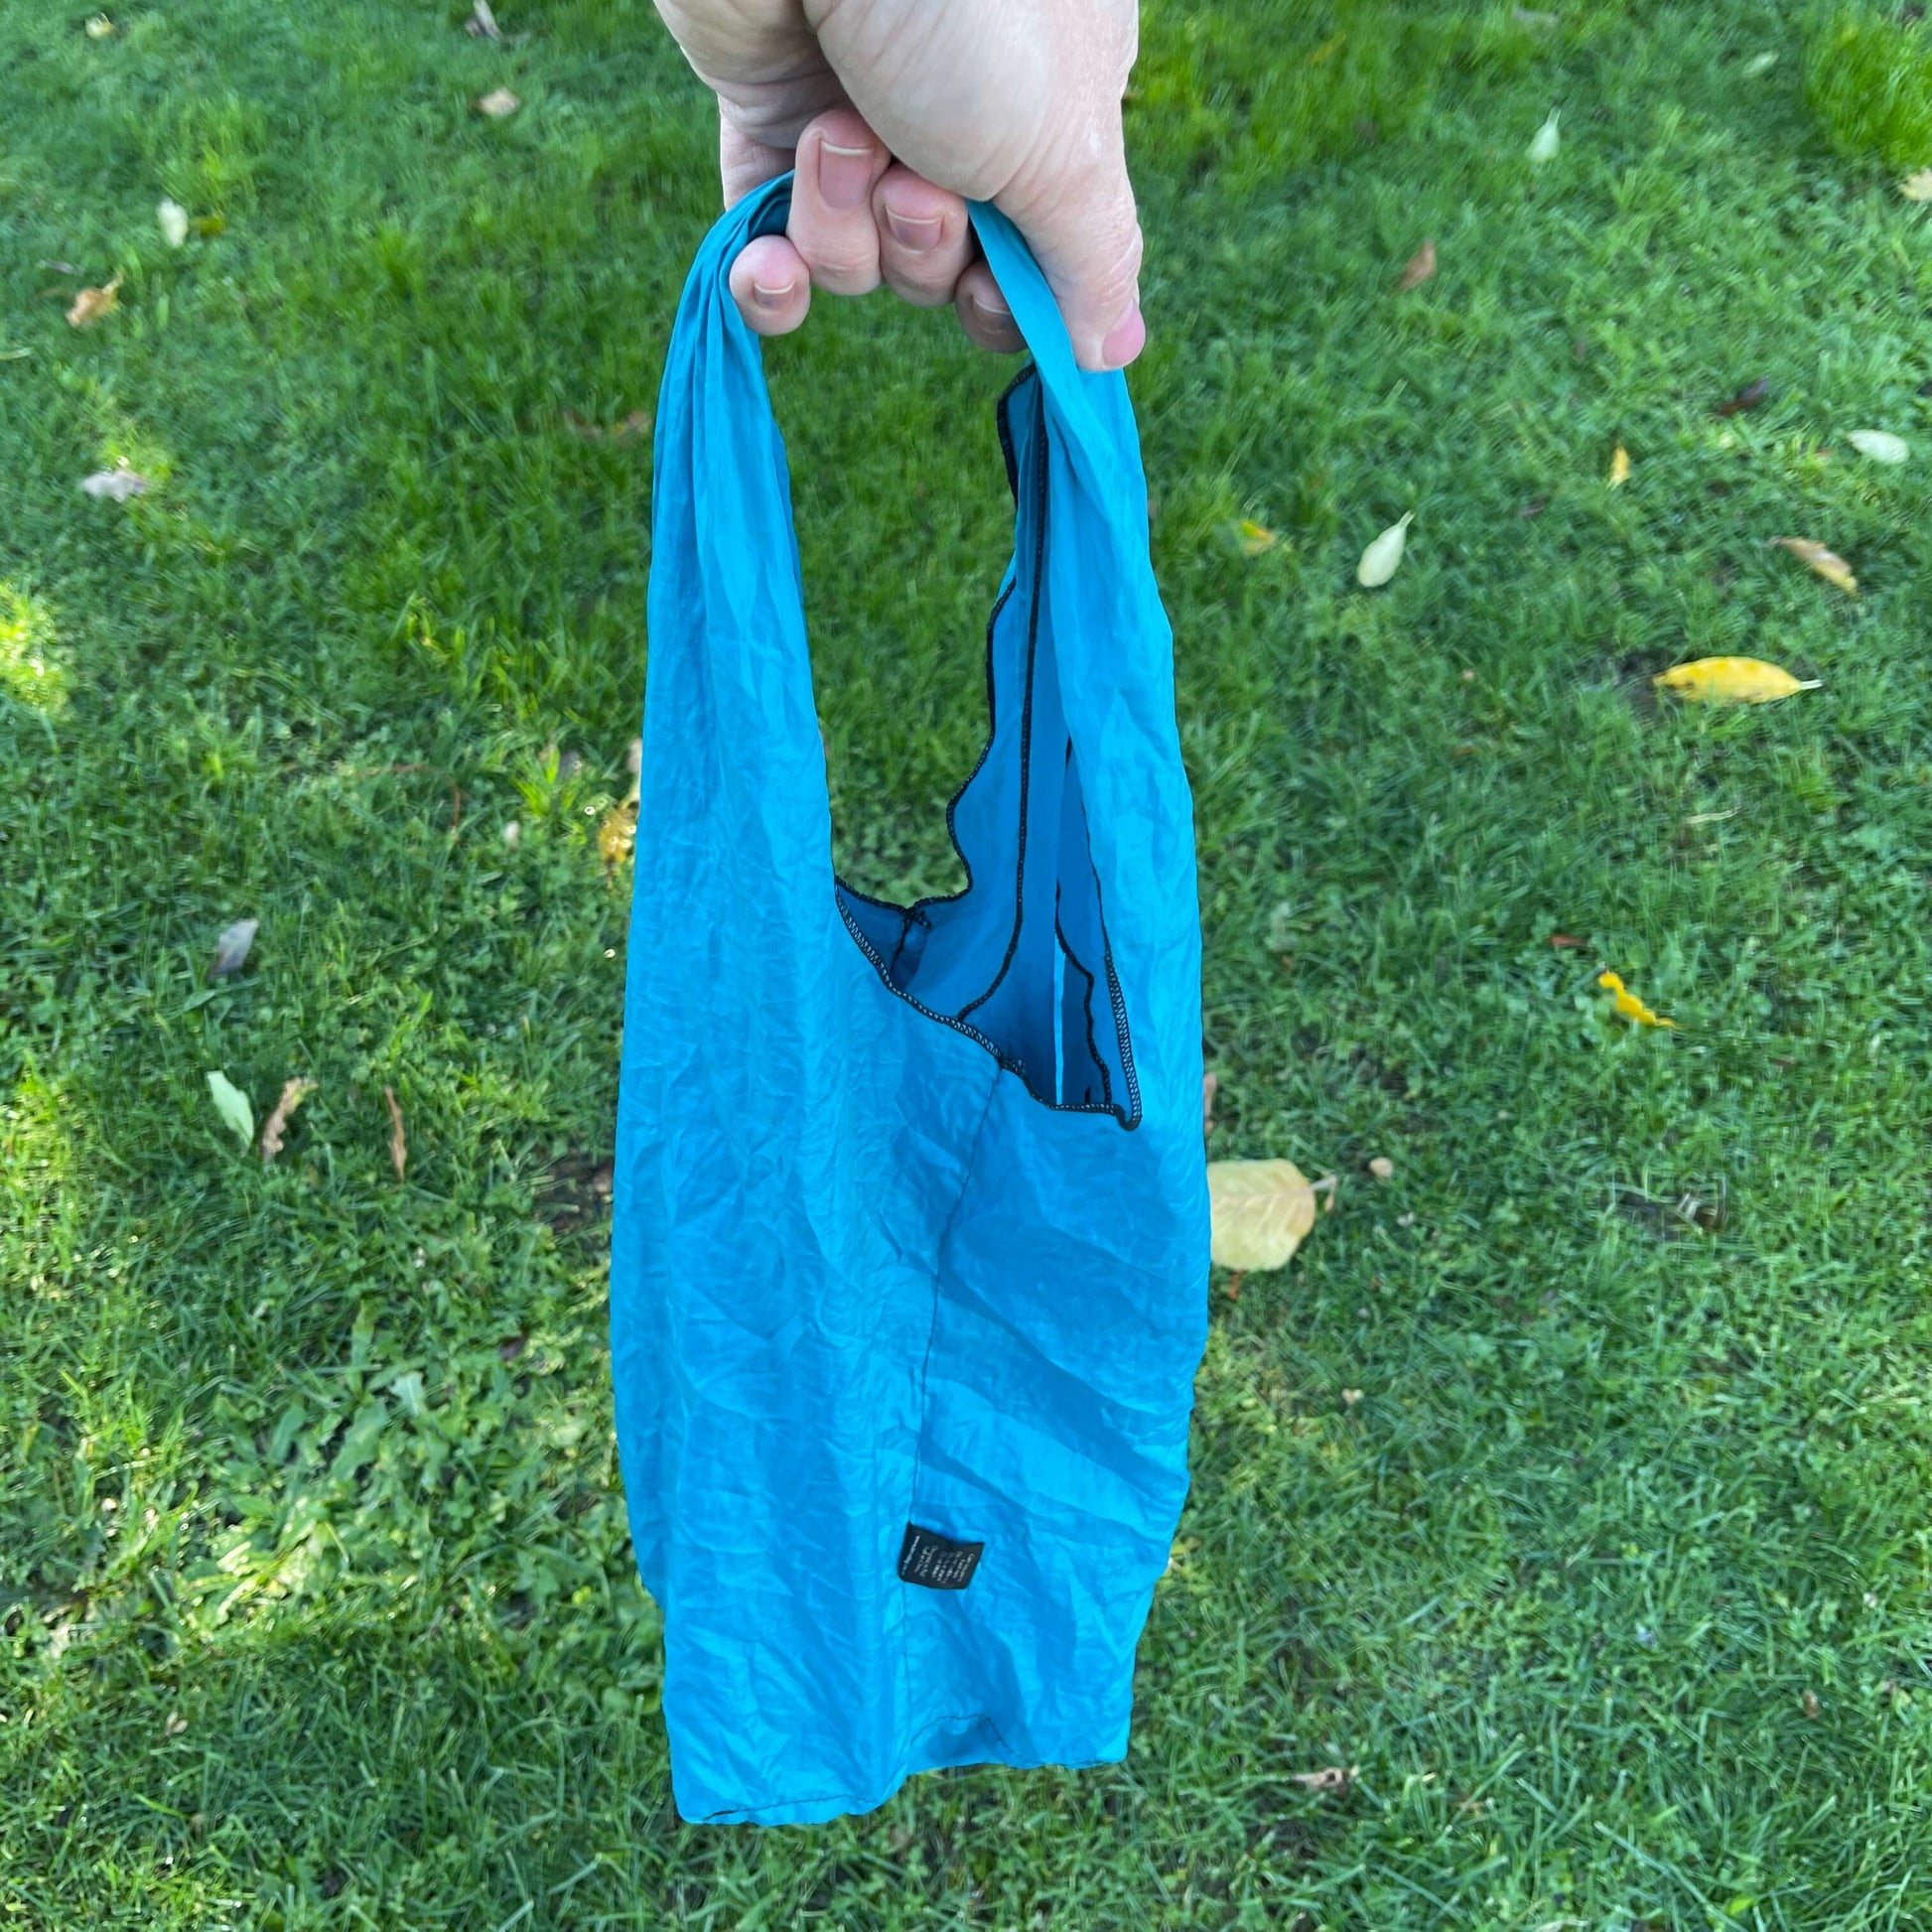 Blue tote bag being held in hand.